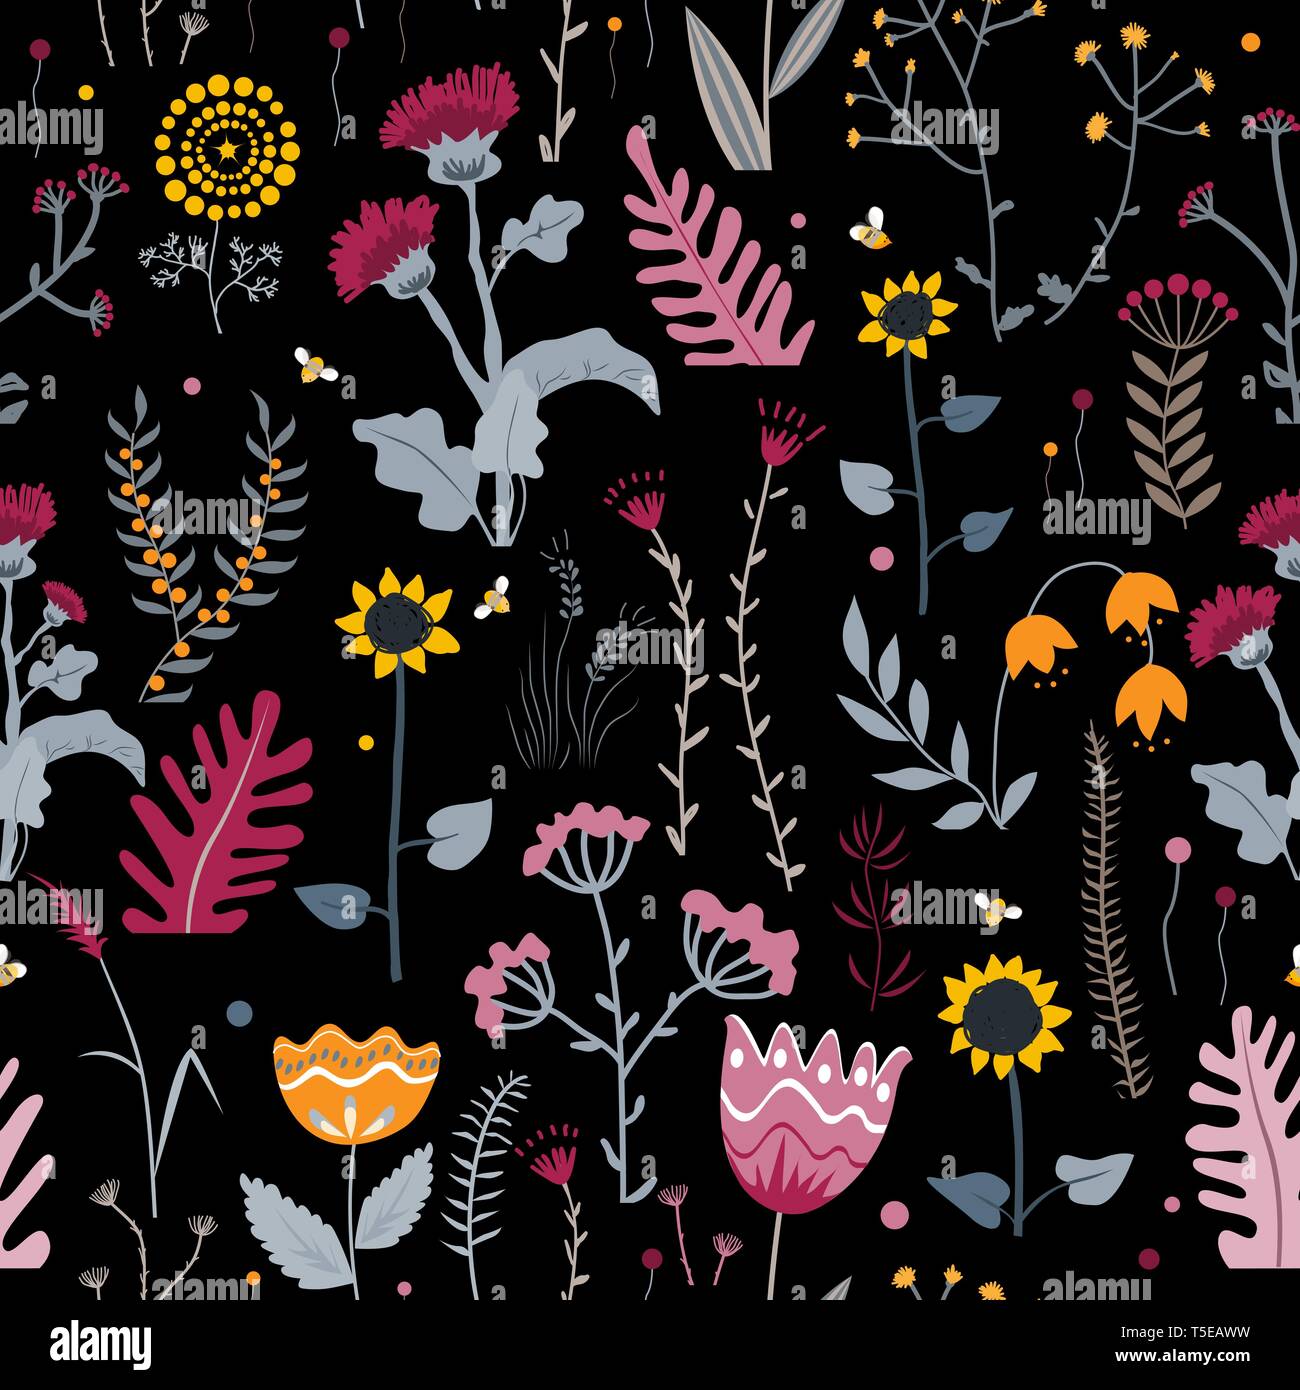 Naturaleza vectorial de fondo sin fisuras dibujadas a mano con hierbas silvestres, flores y hojas en negro. Doodle estilo ilustración floral Ilustración del Vector